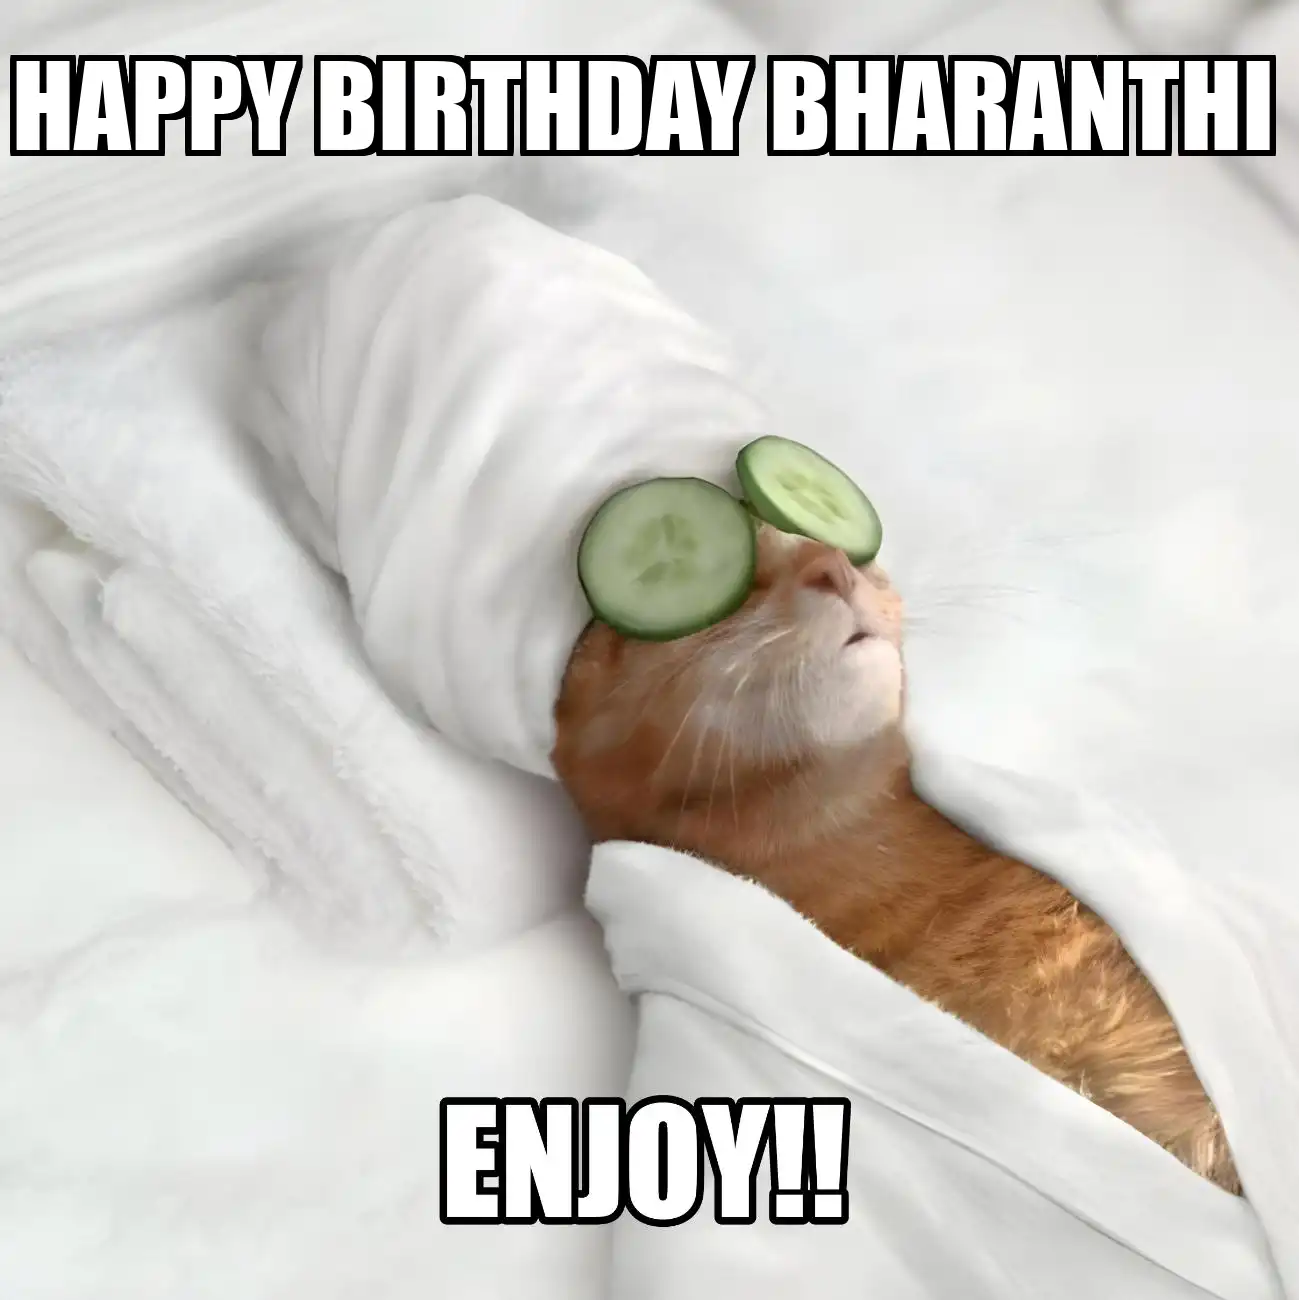 Happy Birthday Bharanthi Enjoy Cat Meme